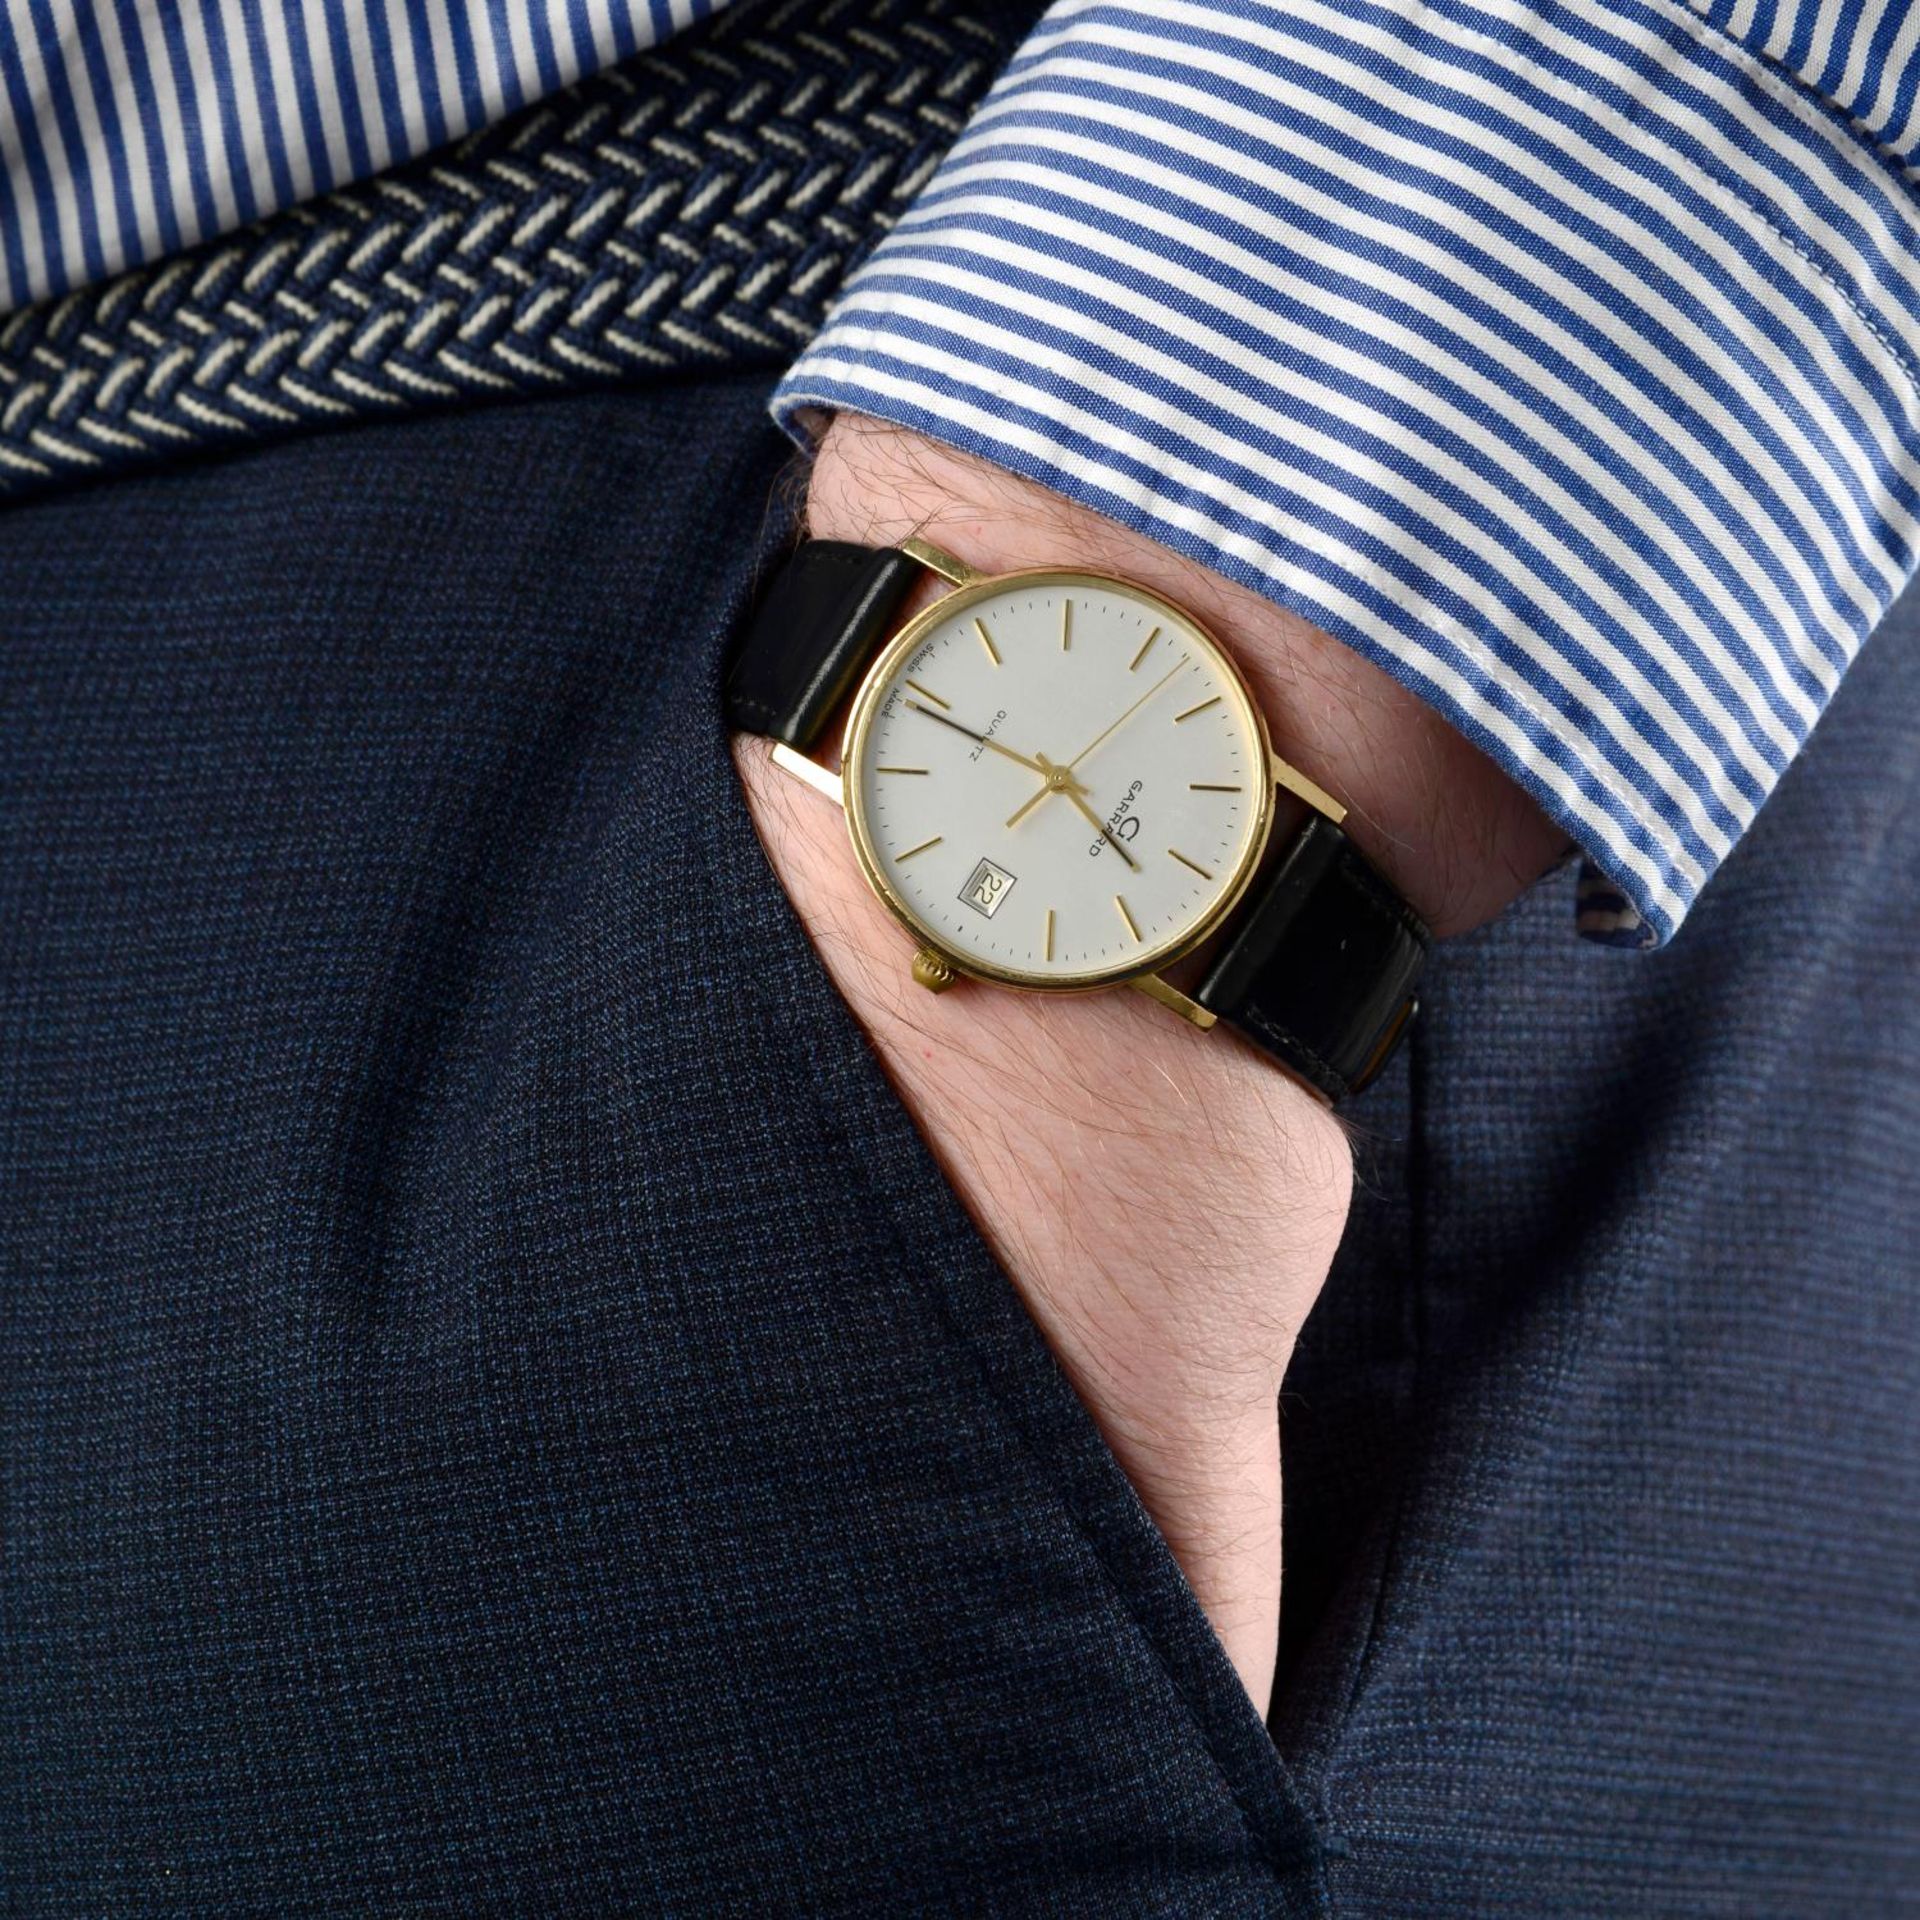 GARRARD - a gentleman's wrist watch. - Image 6 of 6